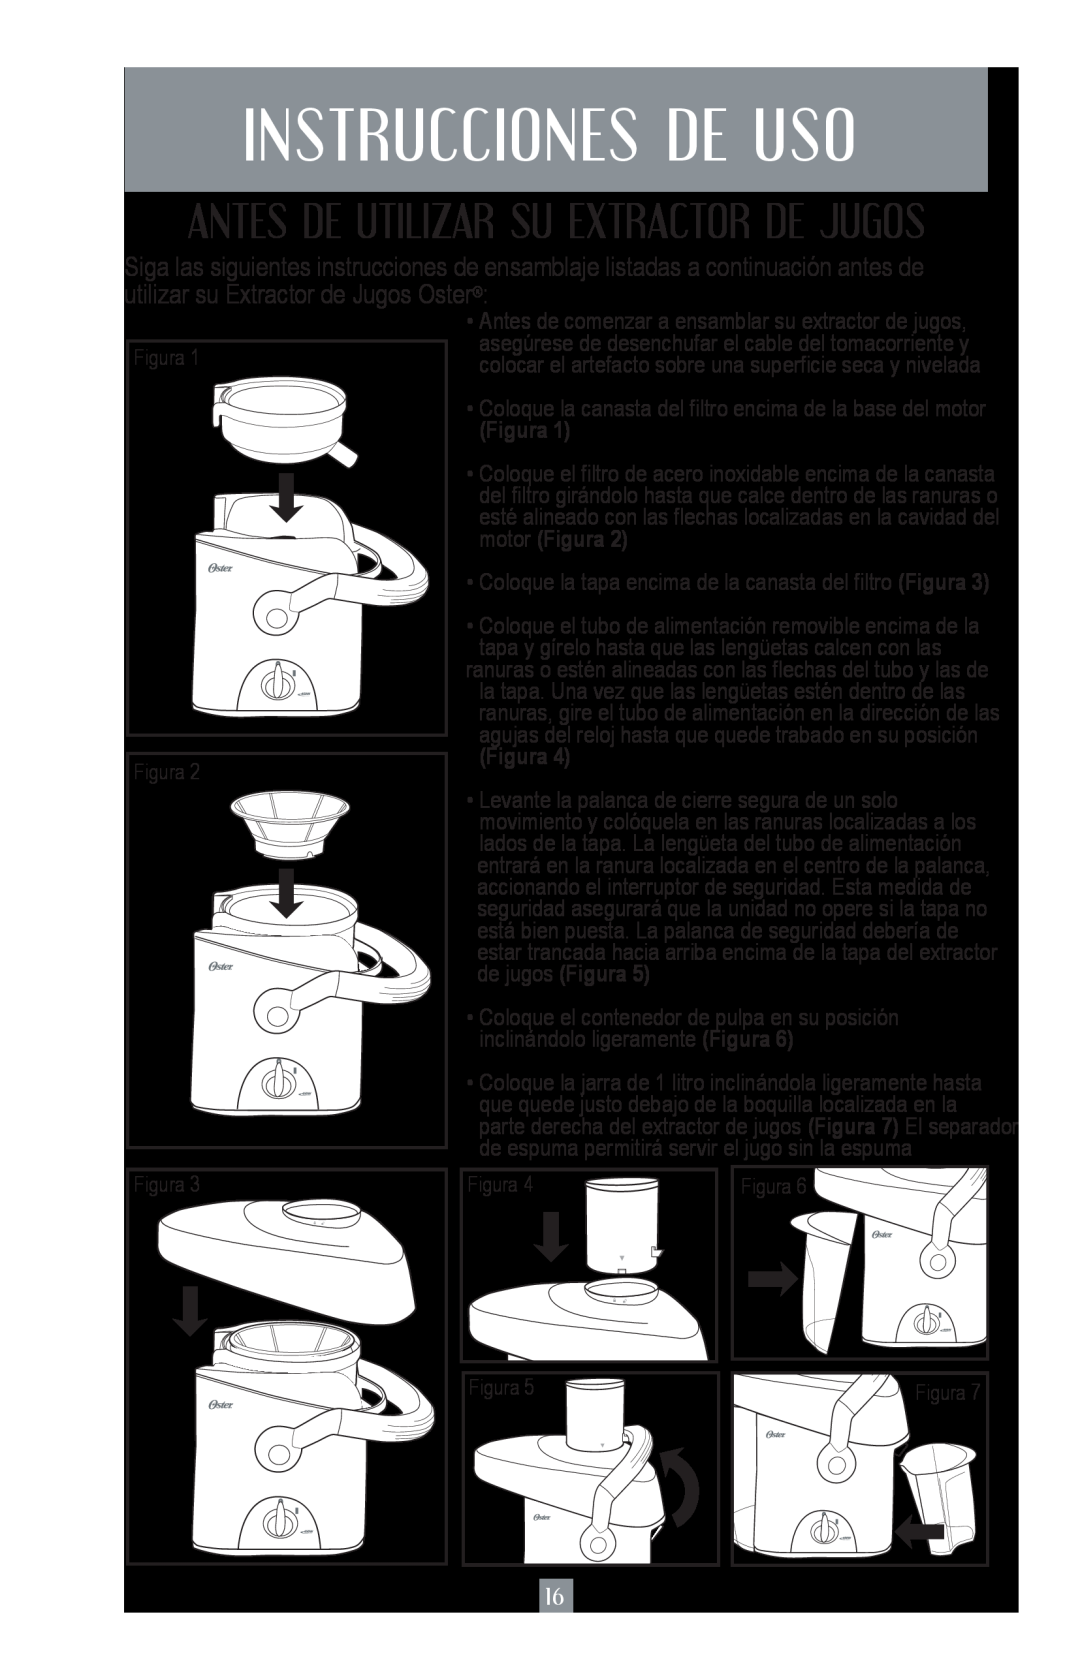 Oster 124828, 3168 user manual Instrucciones De Uso, Antes De Utilizar Su Extractor De Jugos, Figura 